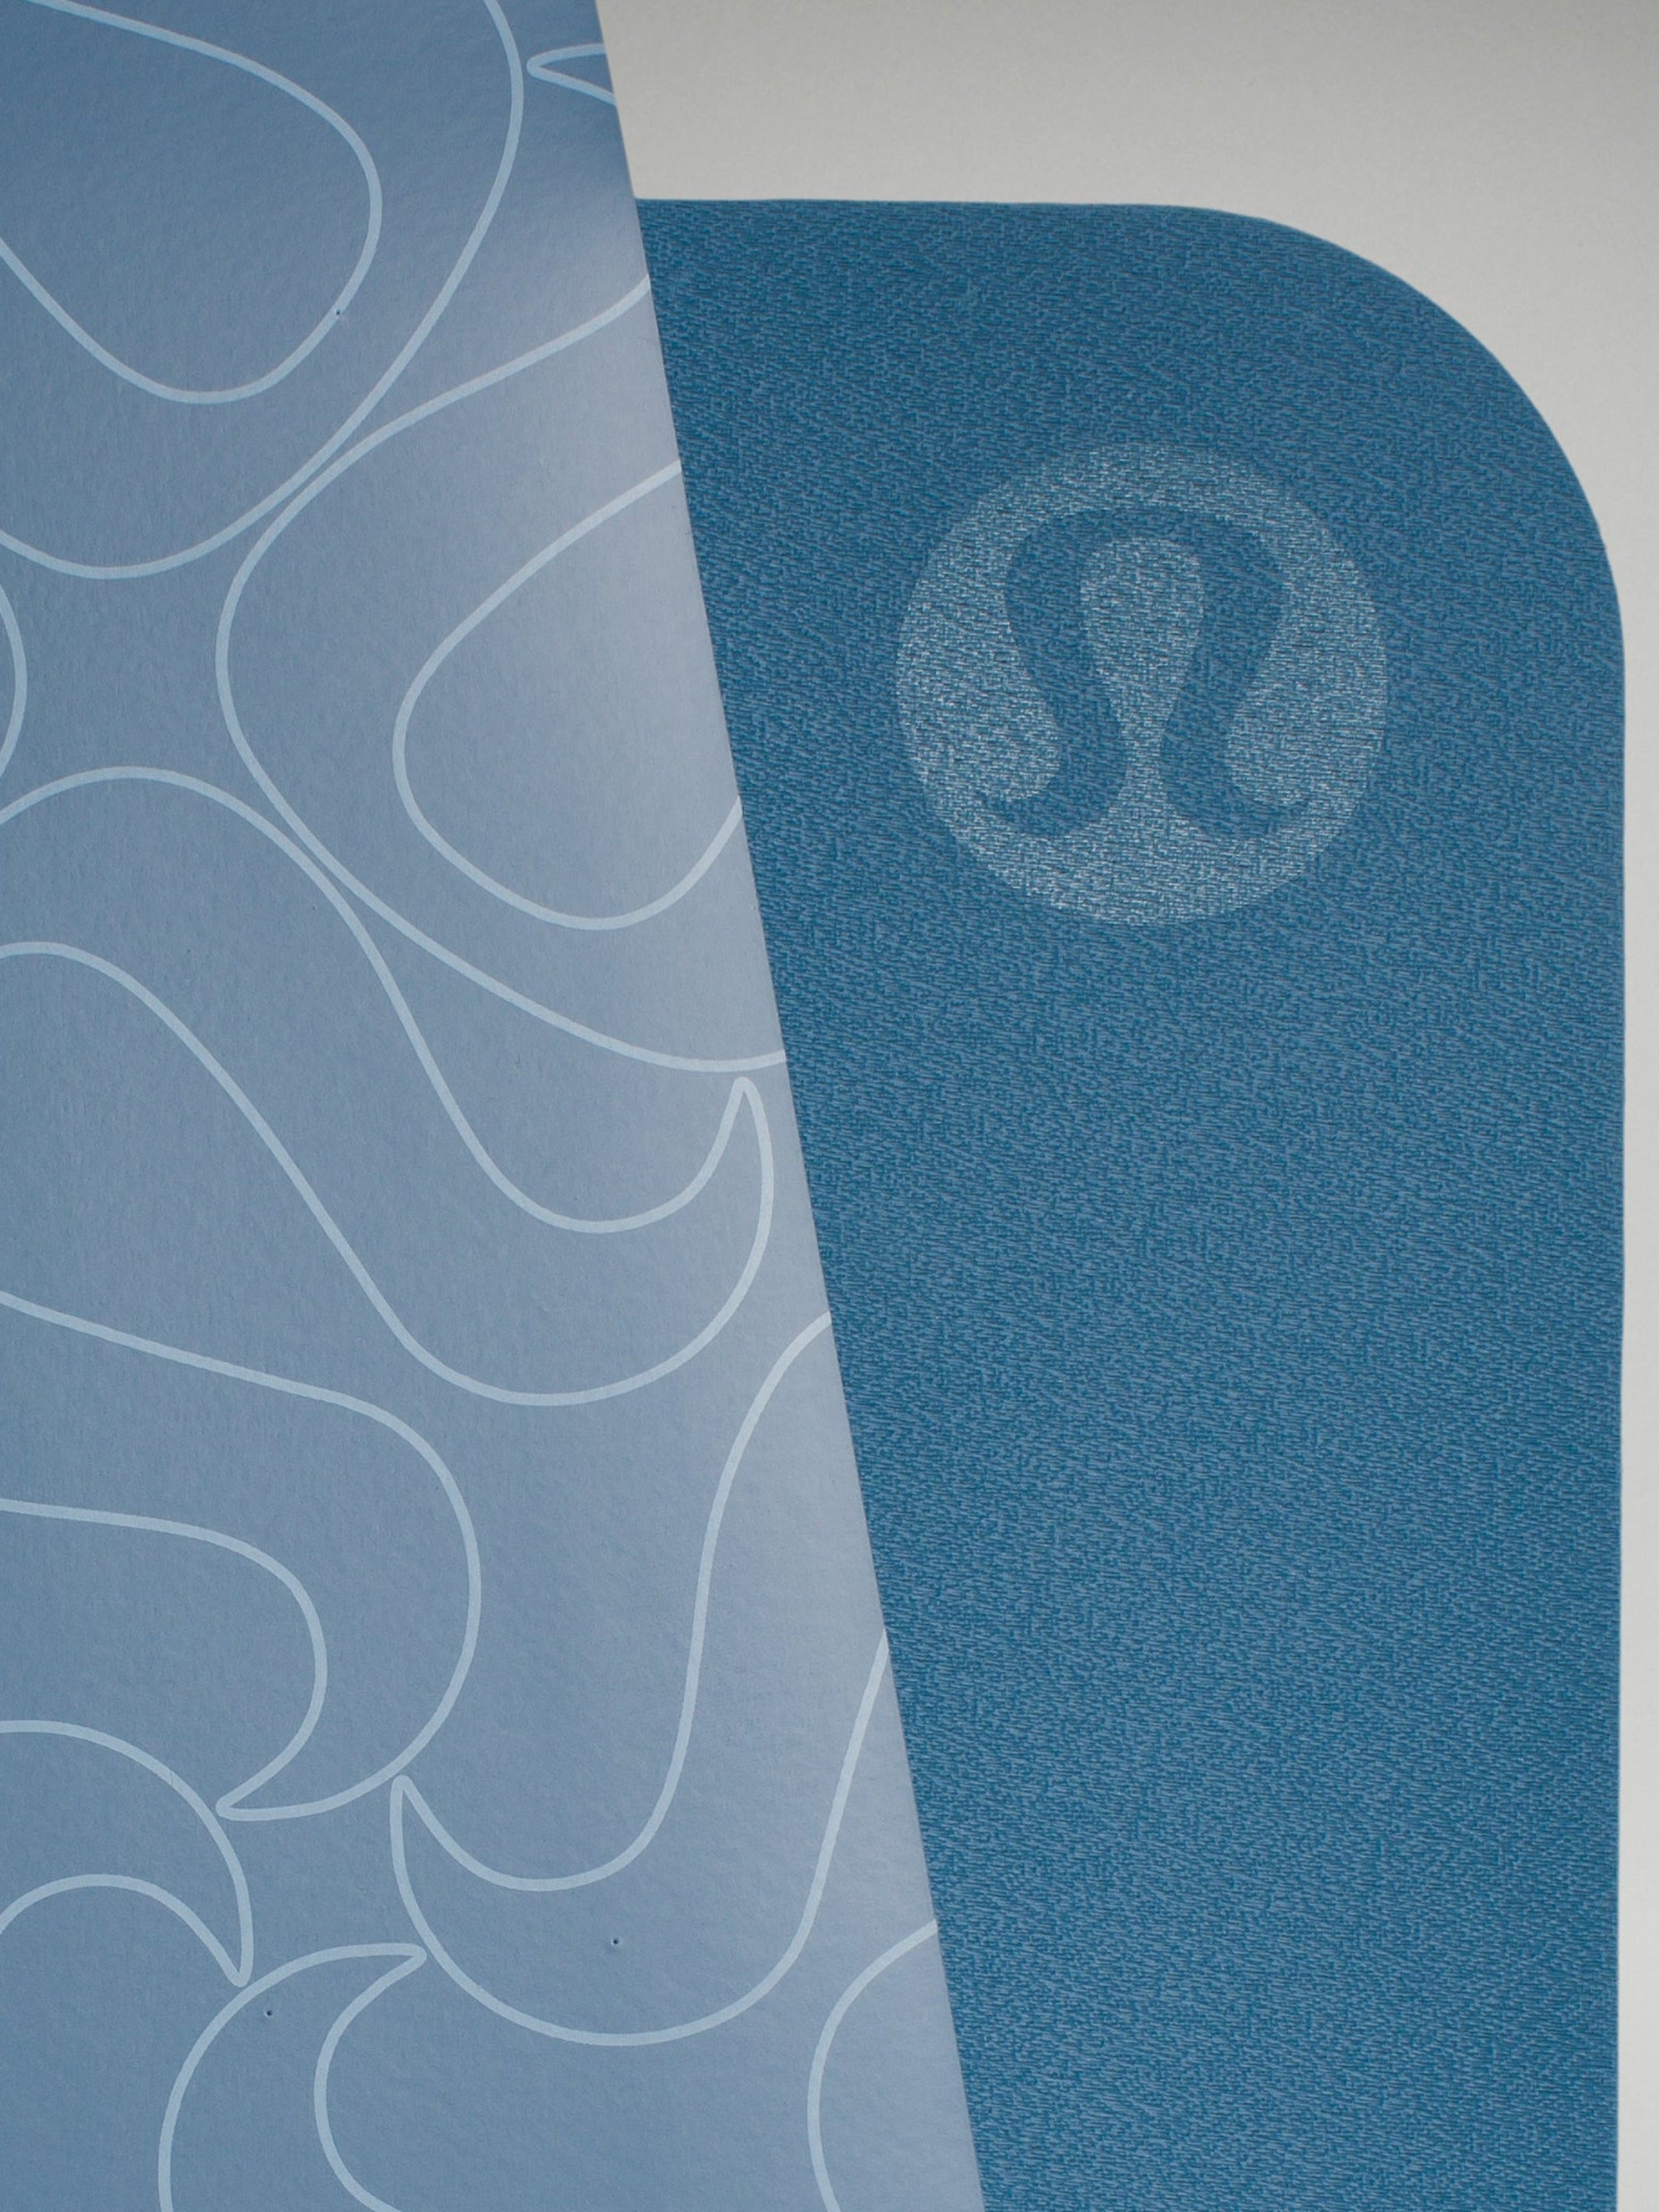 Lululemon Reversible Yoga Mat 5mm – Mrs. Porter